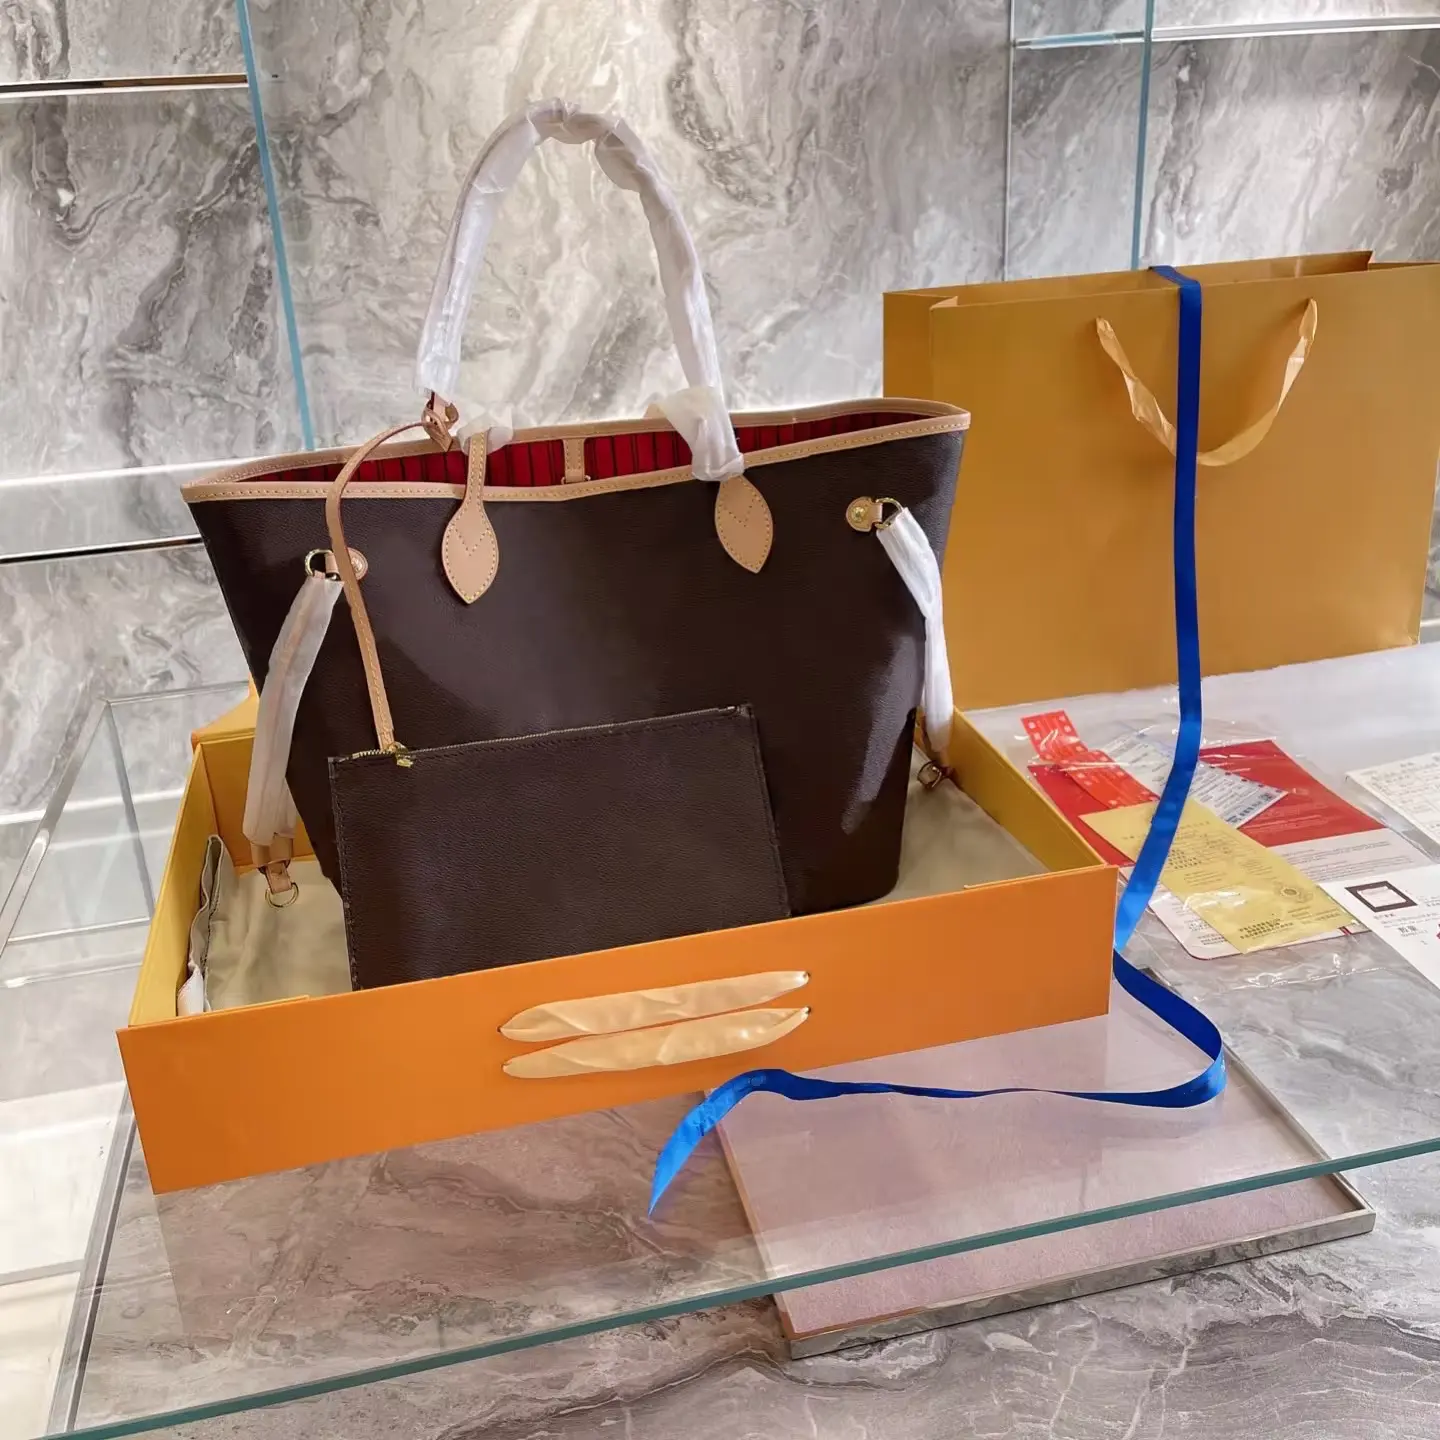 फ़ैक्टरी थोक डिज़ाइनर हैंडबैग उच्च गुणवत्ता वाले चमड़े के टोट बैग महिलाओं के लिए प्रसिद्ध ब्रांड हैंडबैग गुआंगज़ौ में निर्मित लक्जरी